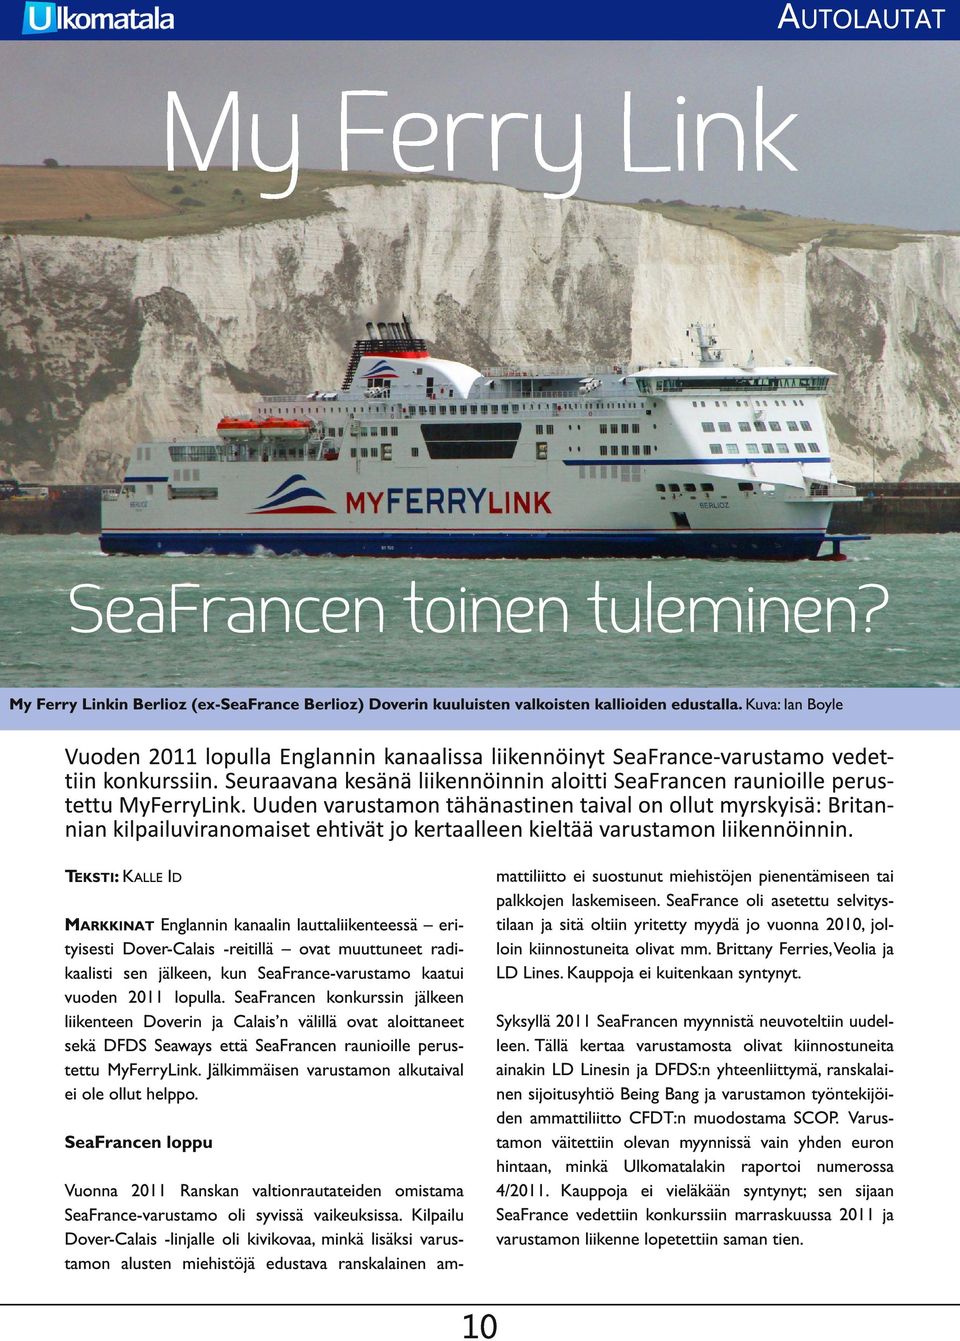 SeaFrance oli asetettu selvitystilaan ja sitä oltiin yritetty myydä jo vuonna 201 0, jolloin kiinnostuneita olivat mm. Brittany Ferries,Veolia ja LD Lines. Kauppoja ei kuitenkaan syntynyt.